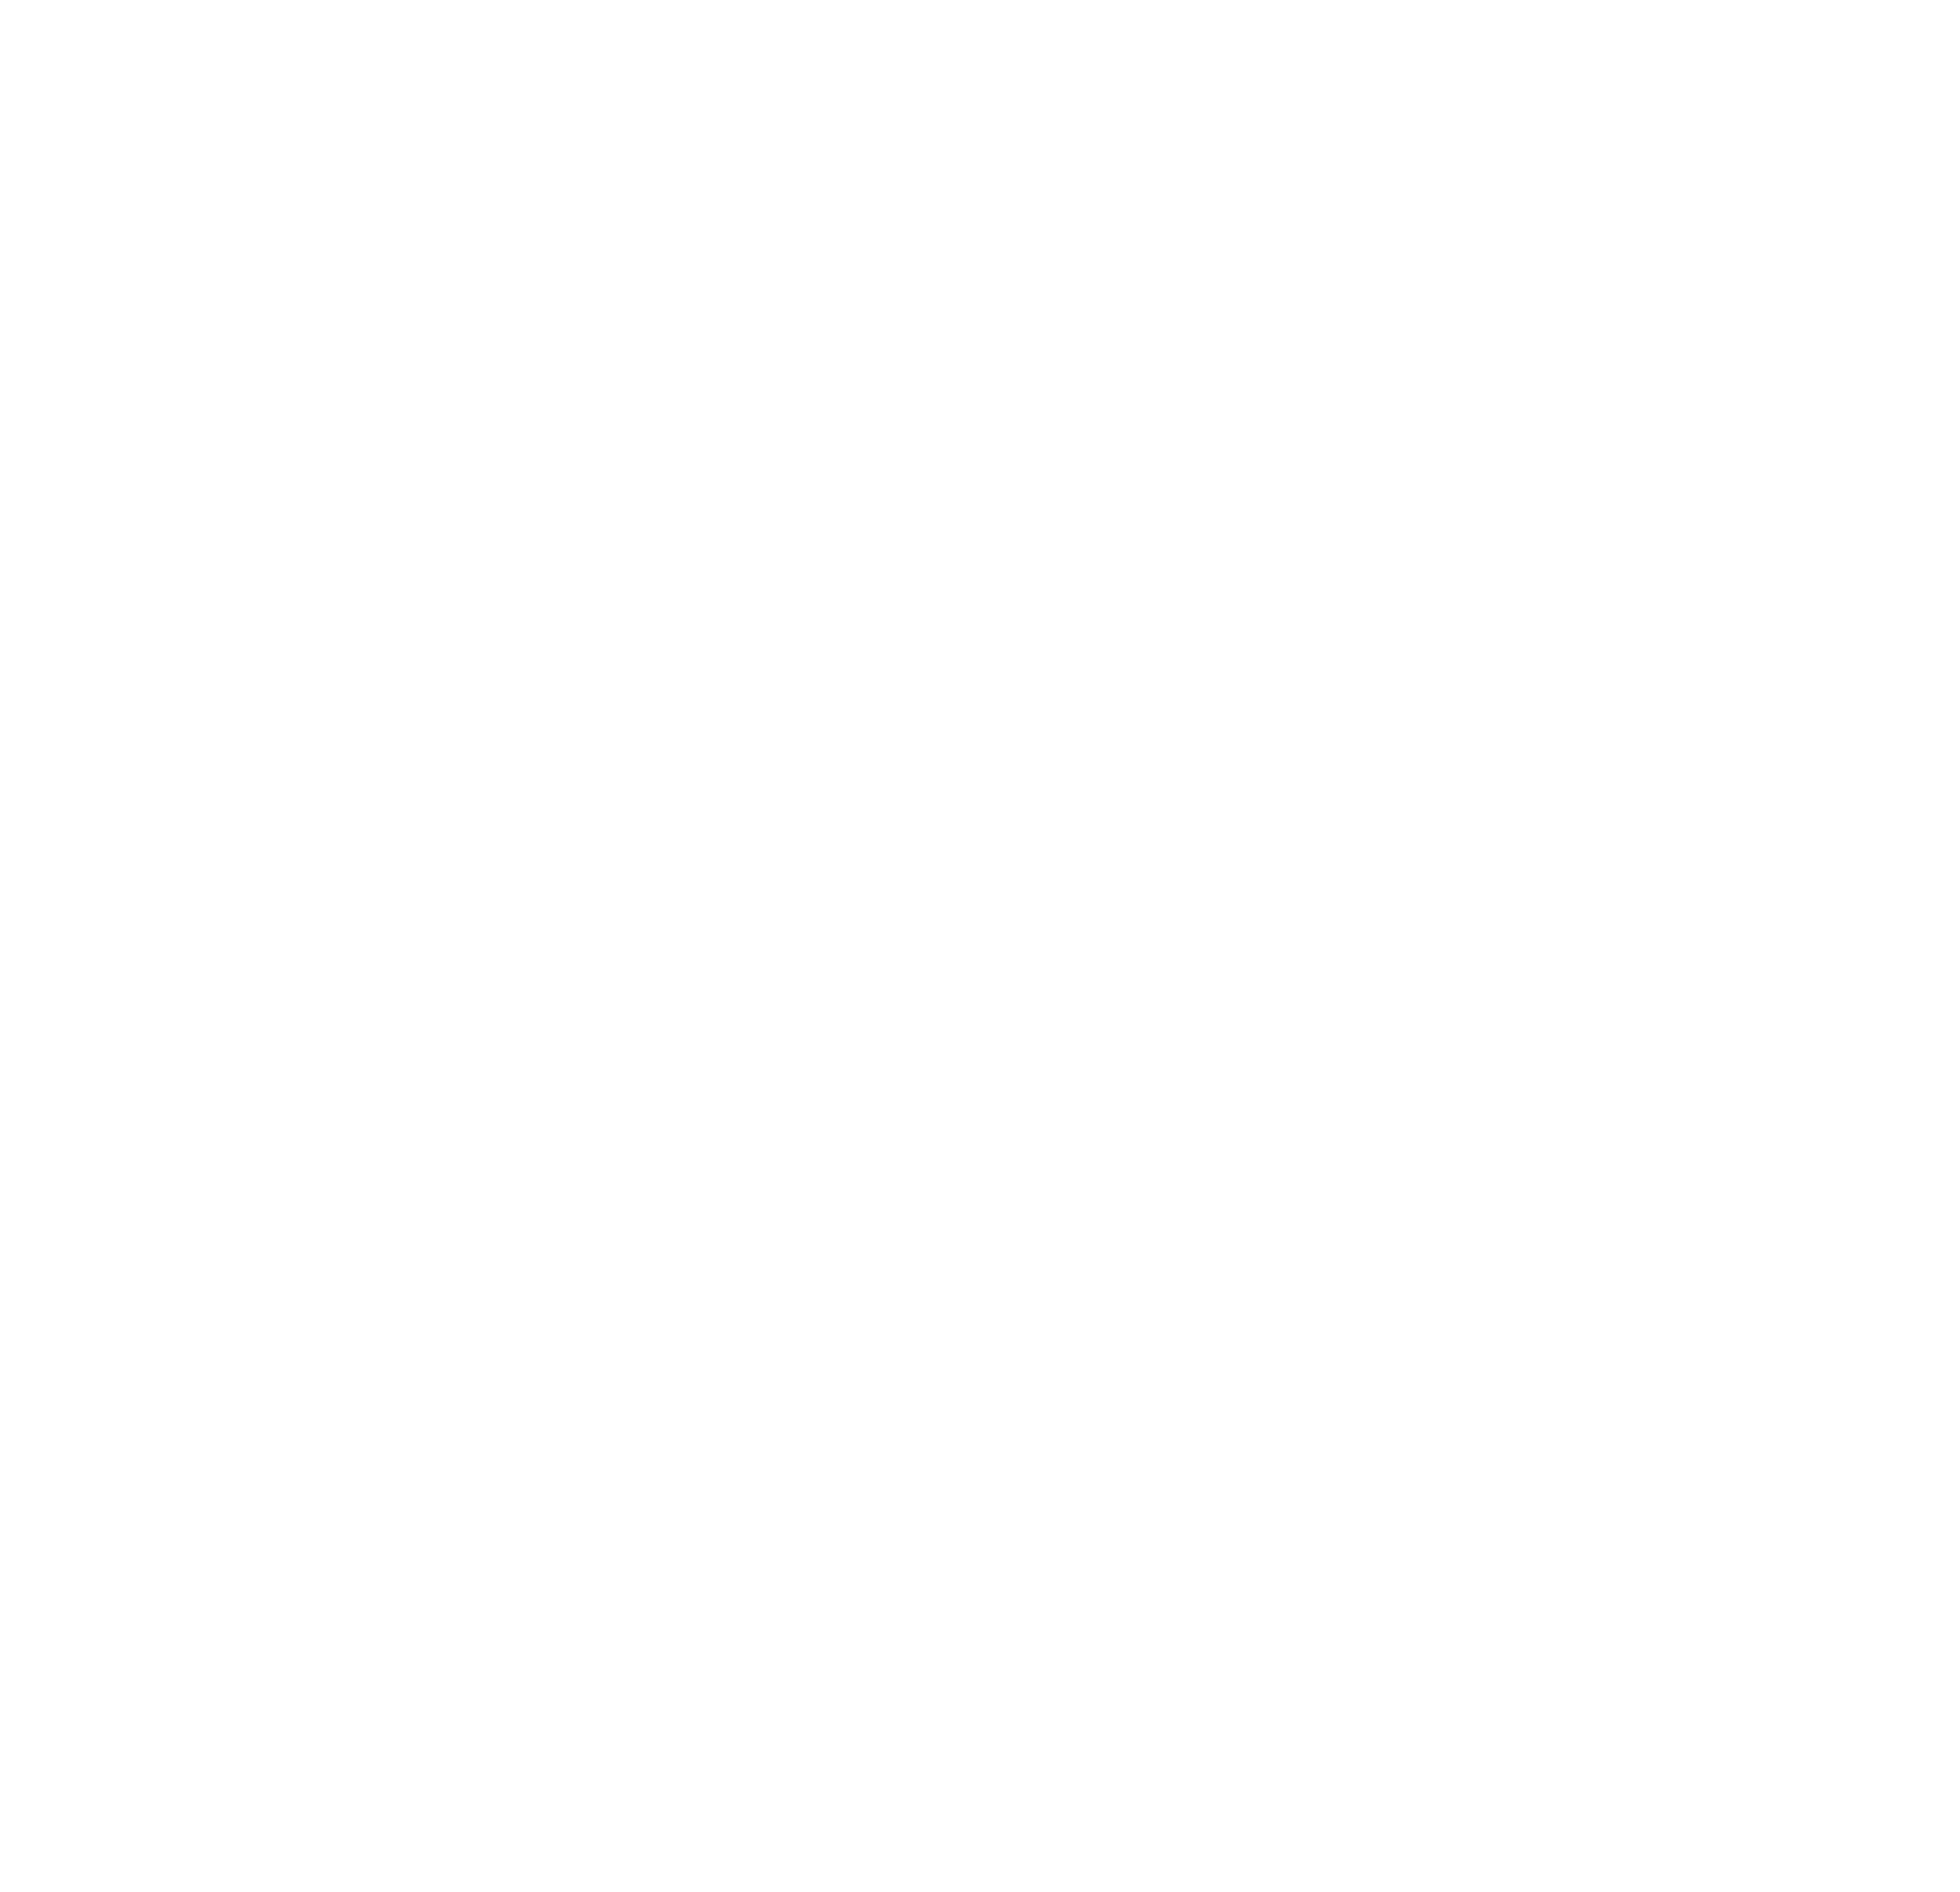 Spiegeltölter - We Create Design-Logo